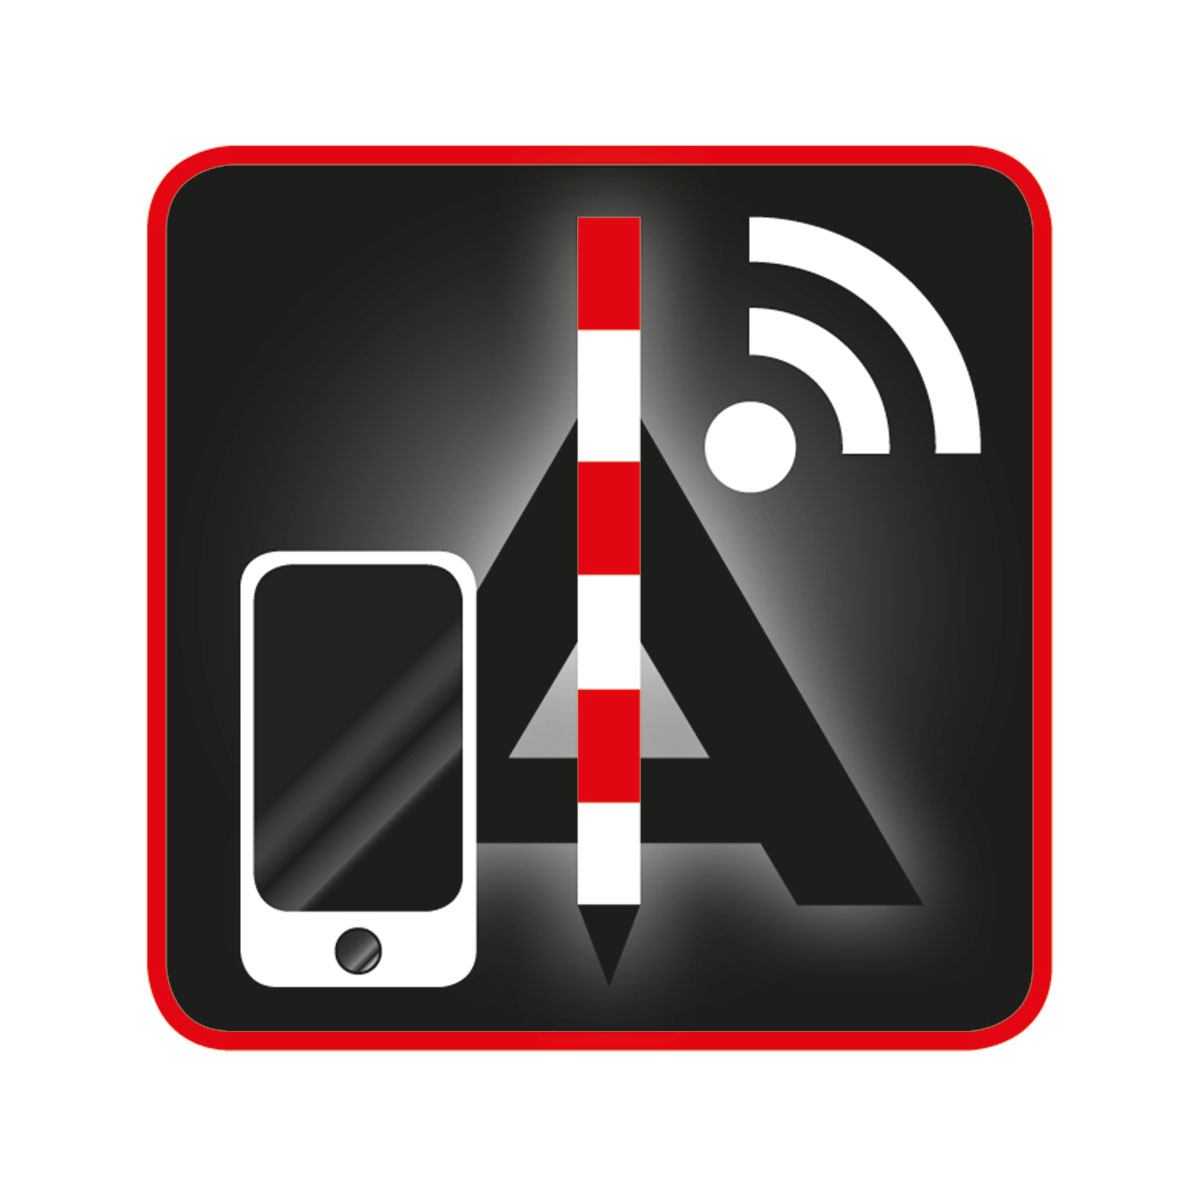 Attenberger Connector App für Android jährliche Lizenzgebühr